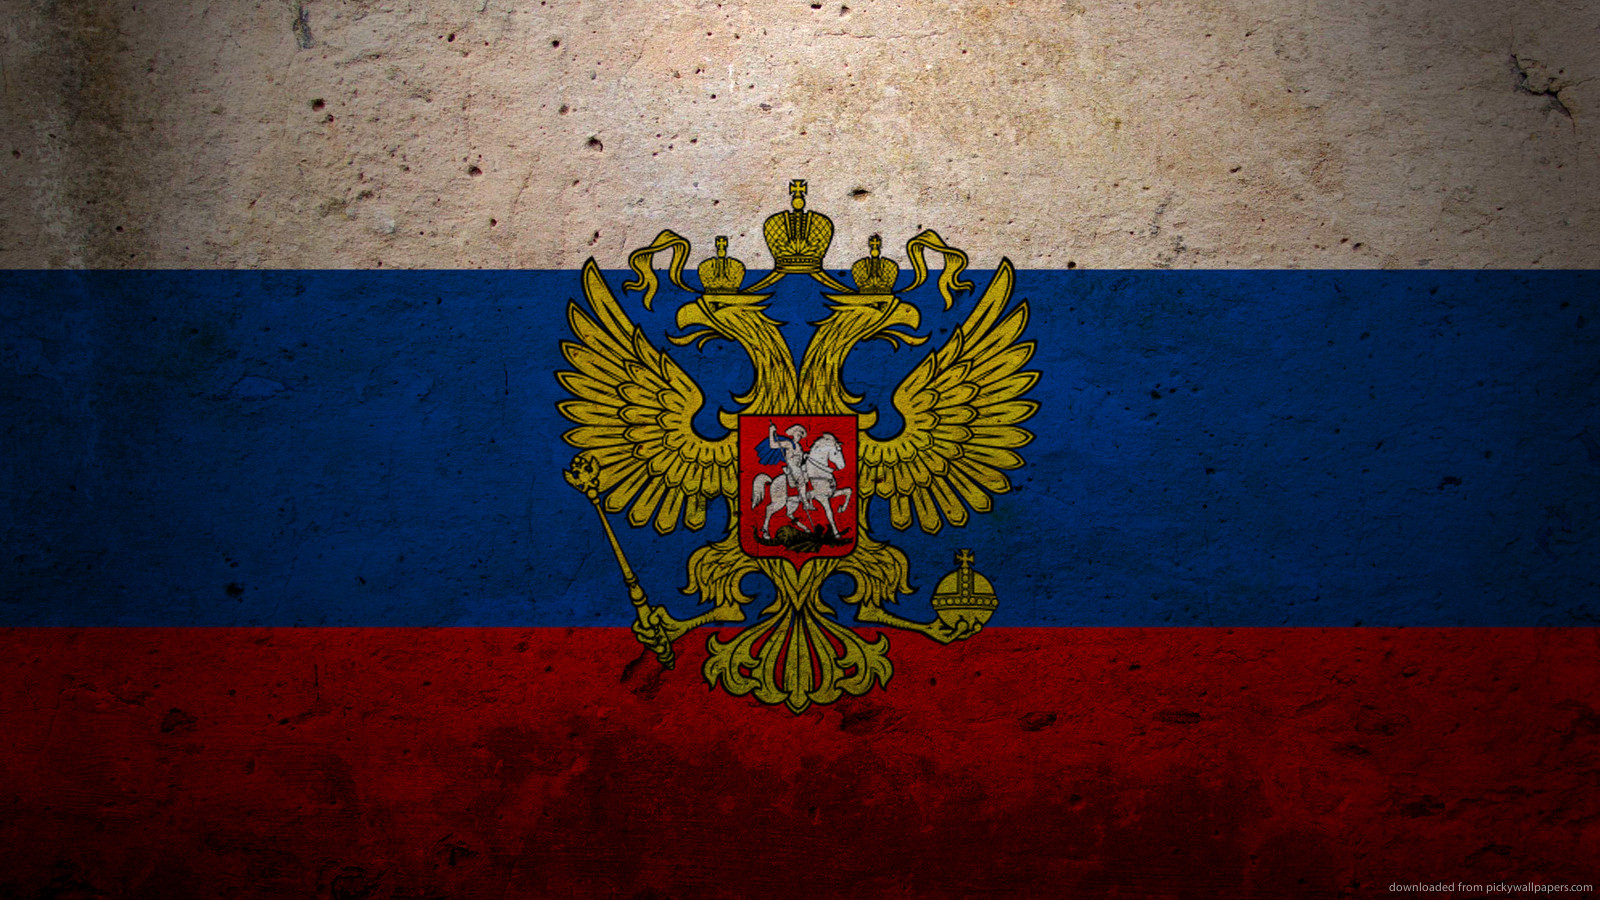 349487 обои 1440x2560 на телефон бесплатно, скачать картинки флаги, флаг россии, разное 1440x2560 на мобильный